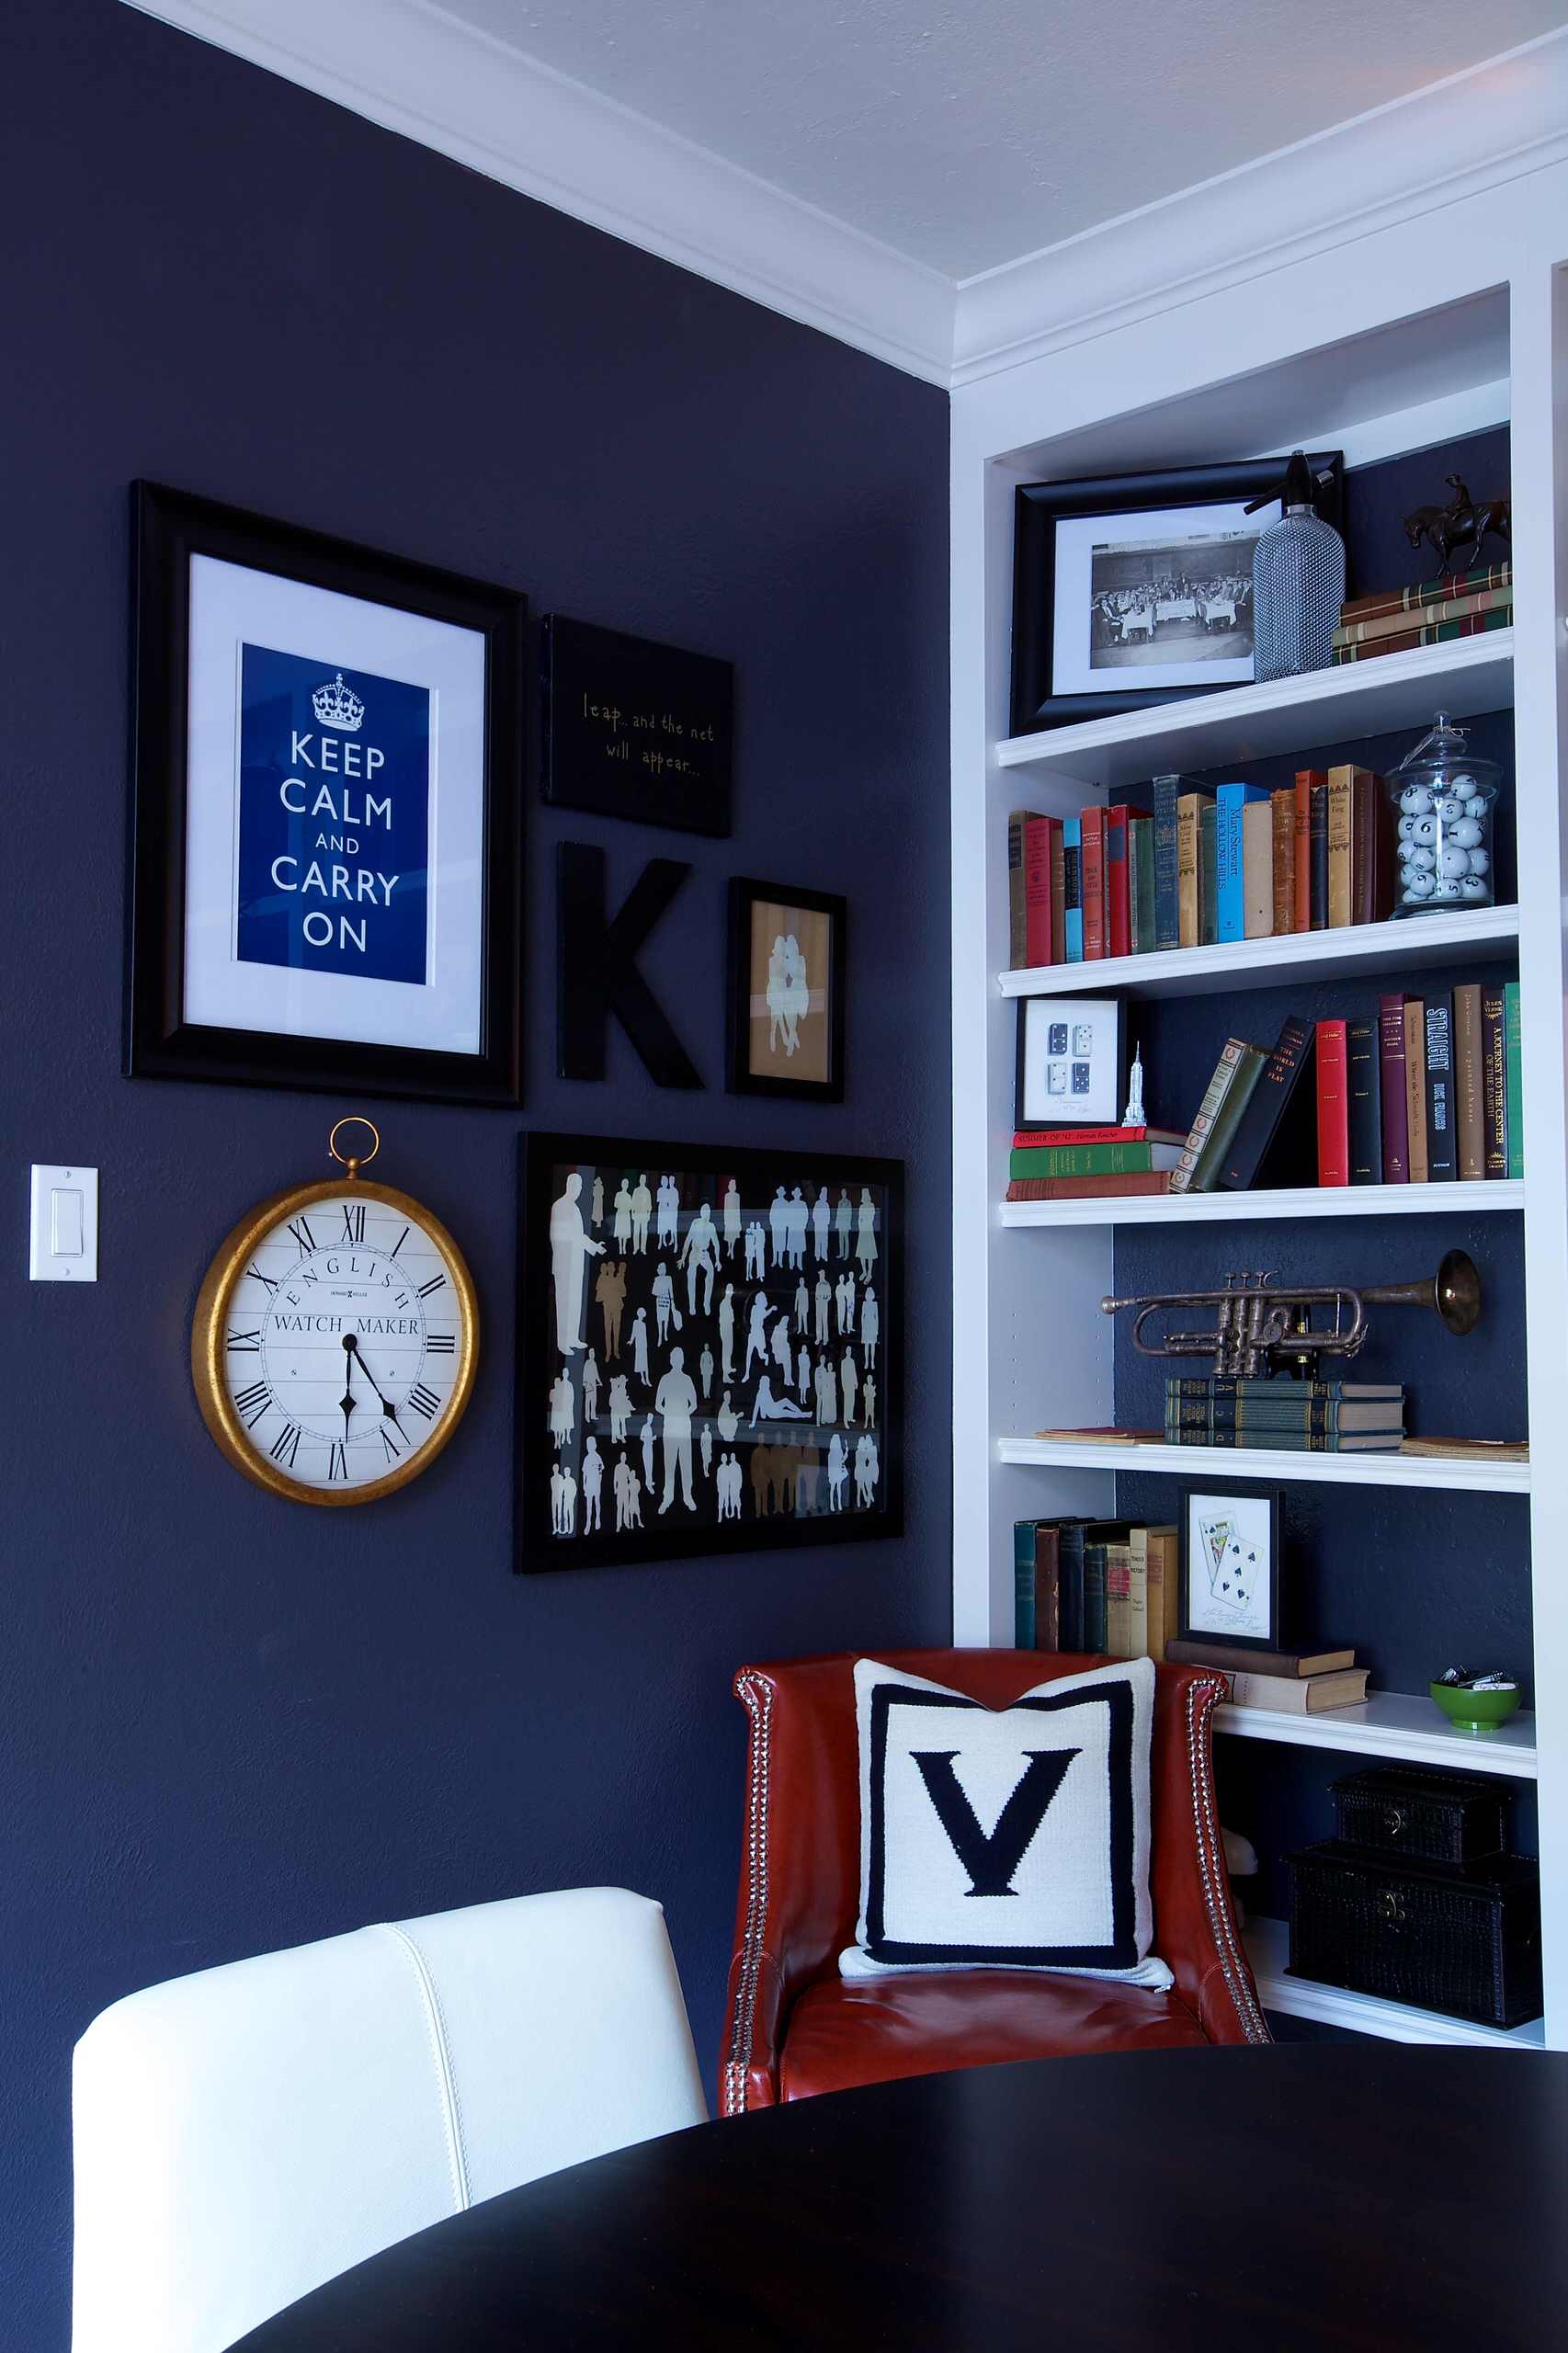 Стеллаж синий. Стеллаж в интерьере комнаты. Книжные полки на стену. Синяя стена с книжными полками.